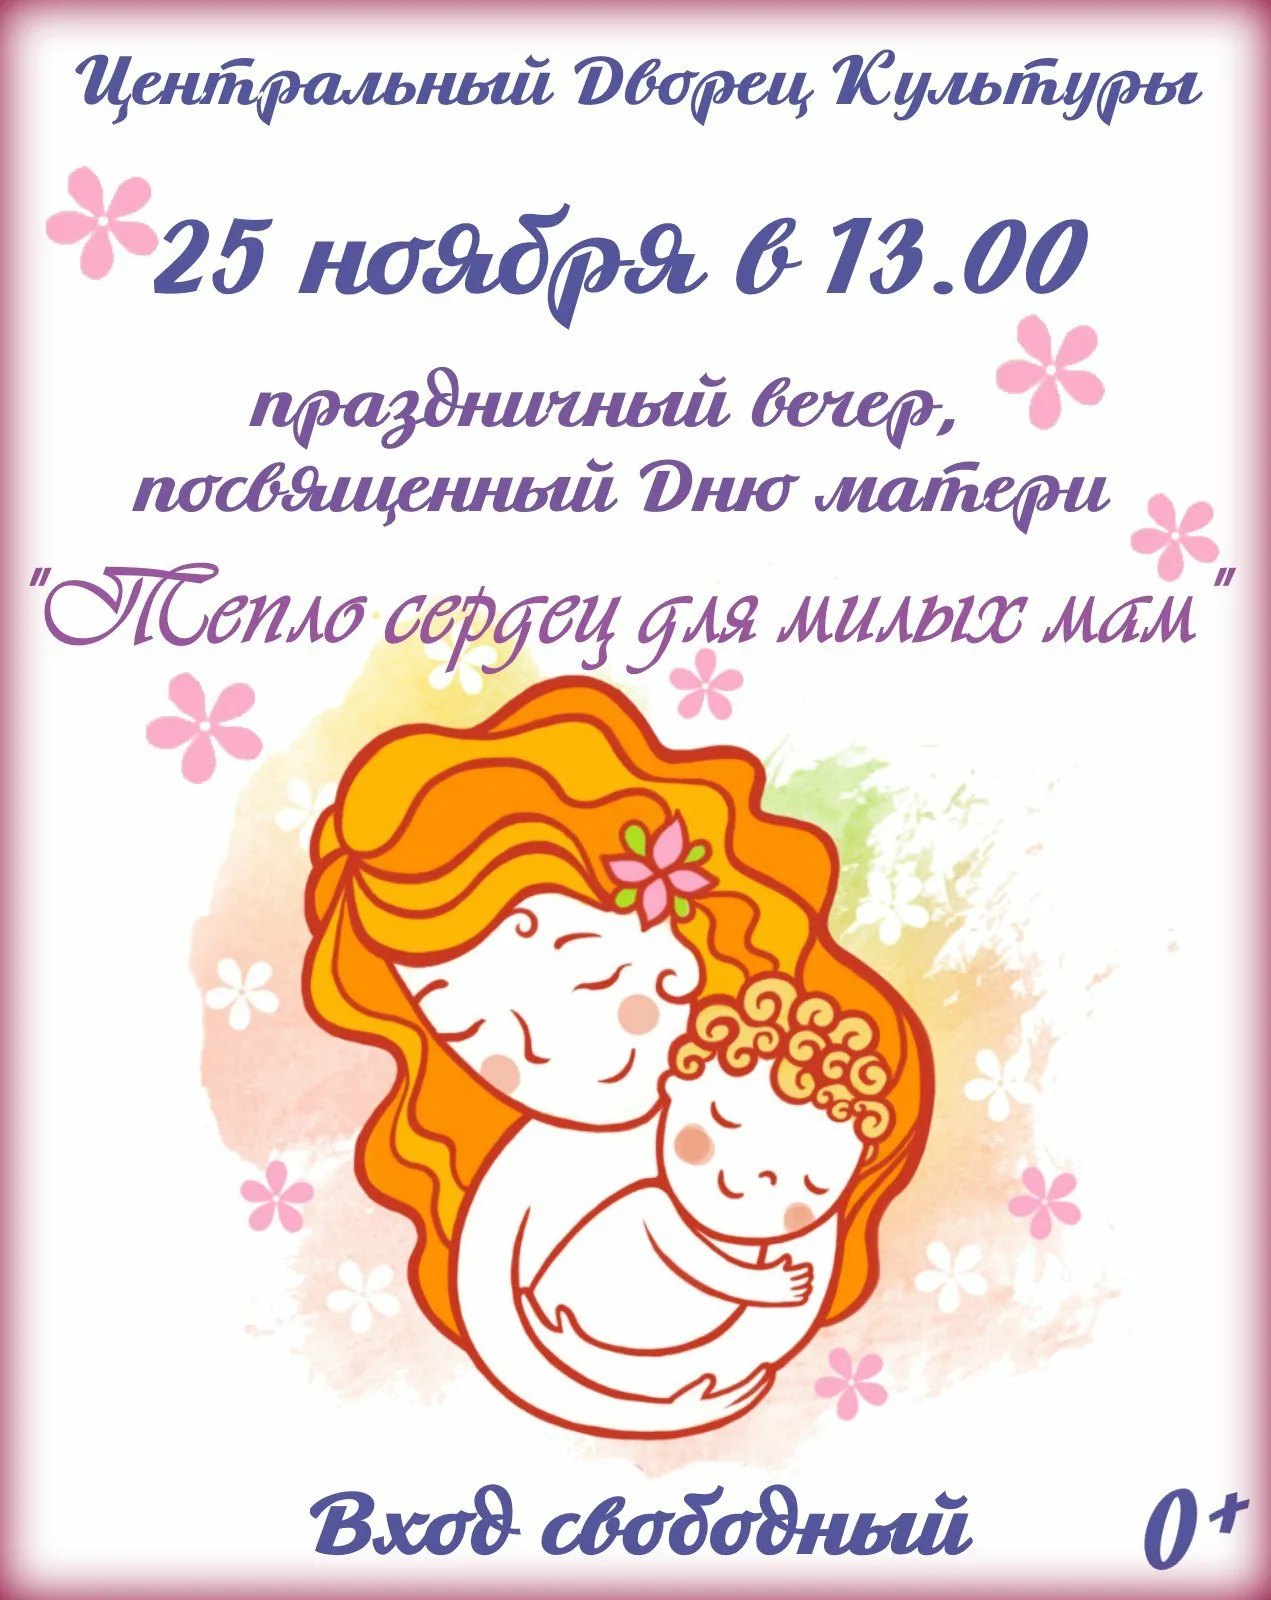 Фото Приглашение на День матери в детском саду в стихах и прозе #73